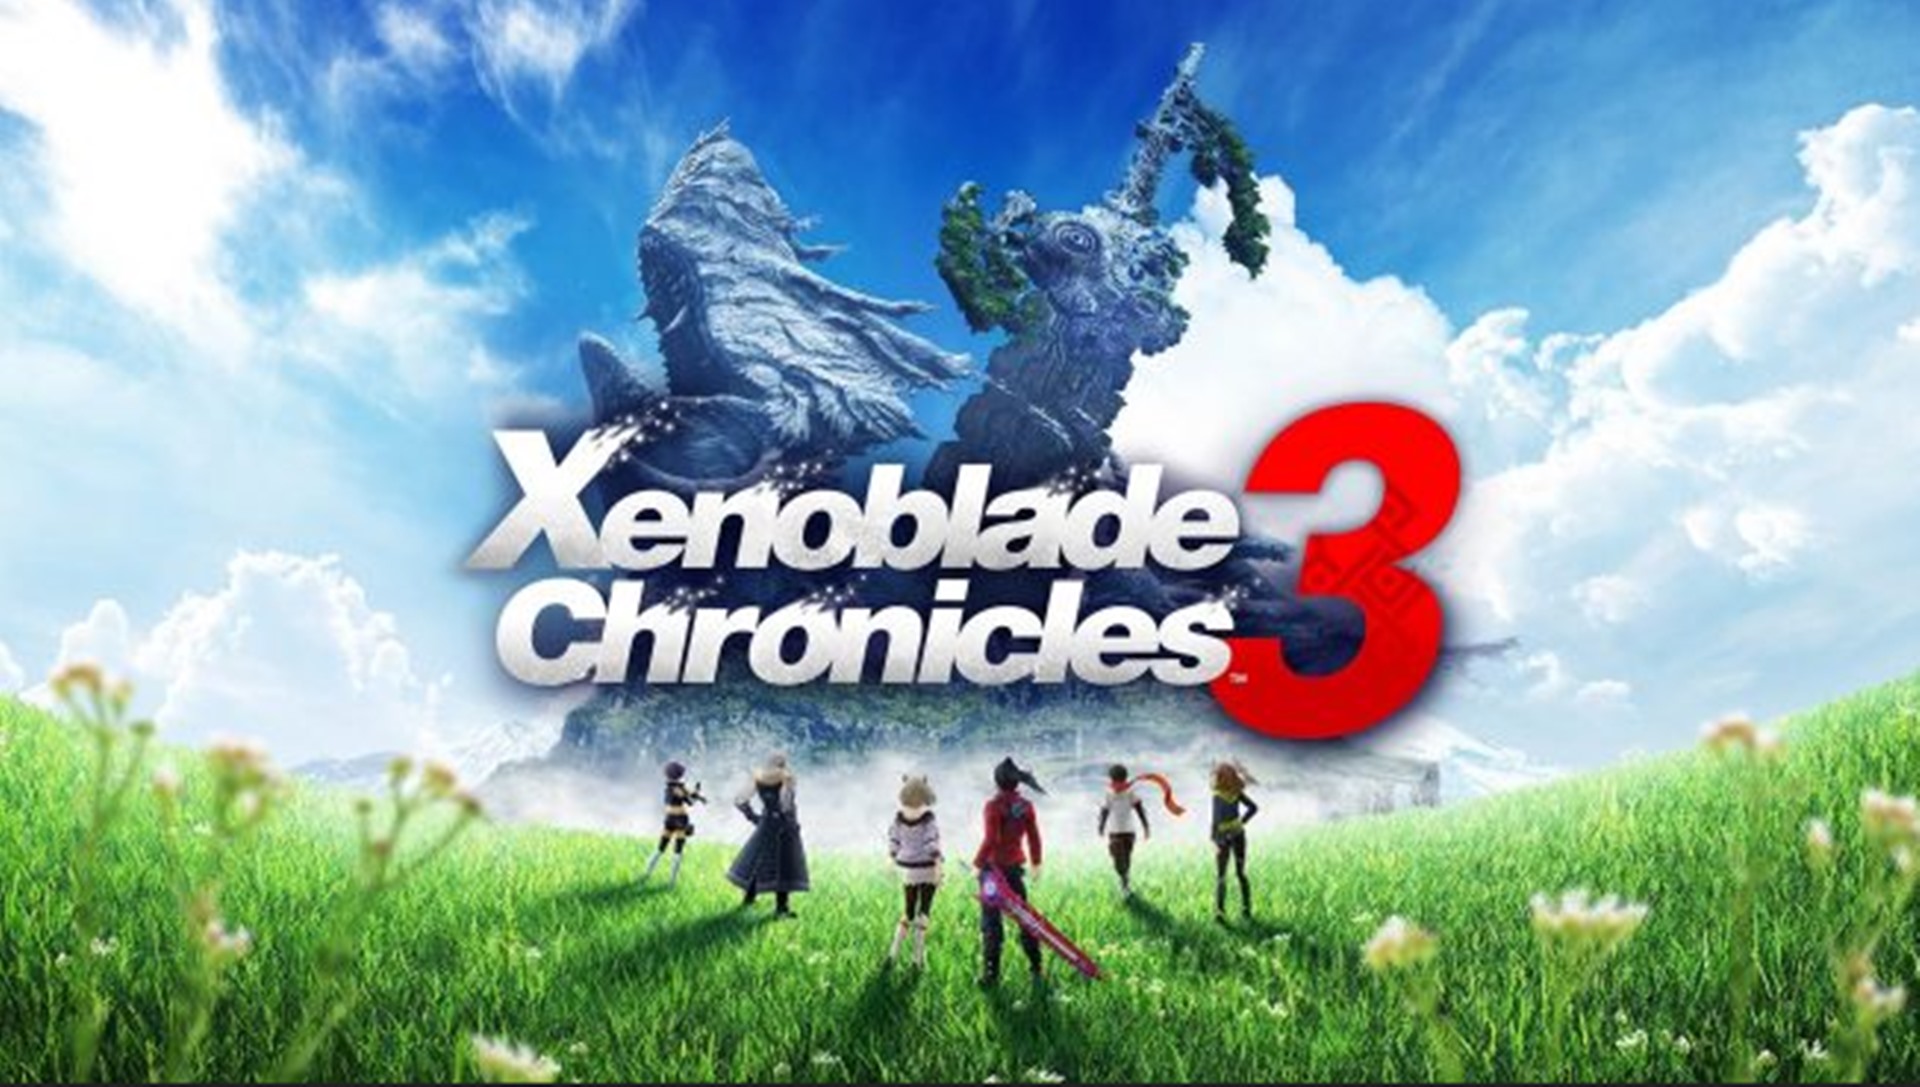 ชมตัวอย่างใหม่เกม Xenoblade Chronicles 3 เปิดข้อมูลเรื่องราวในเกม